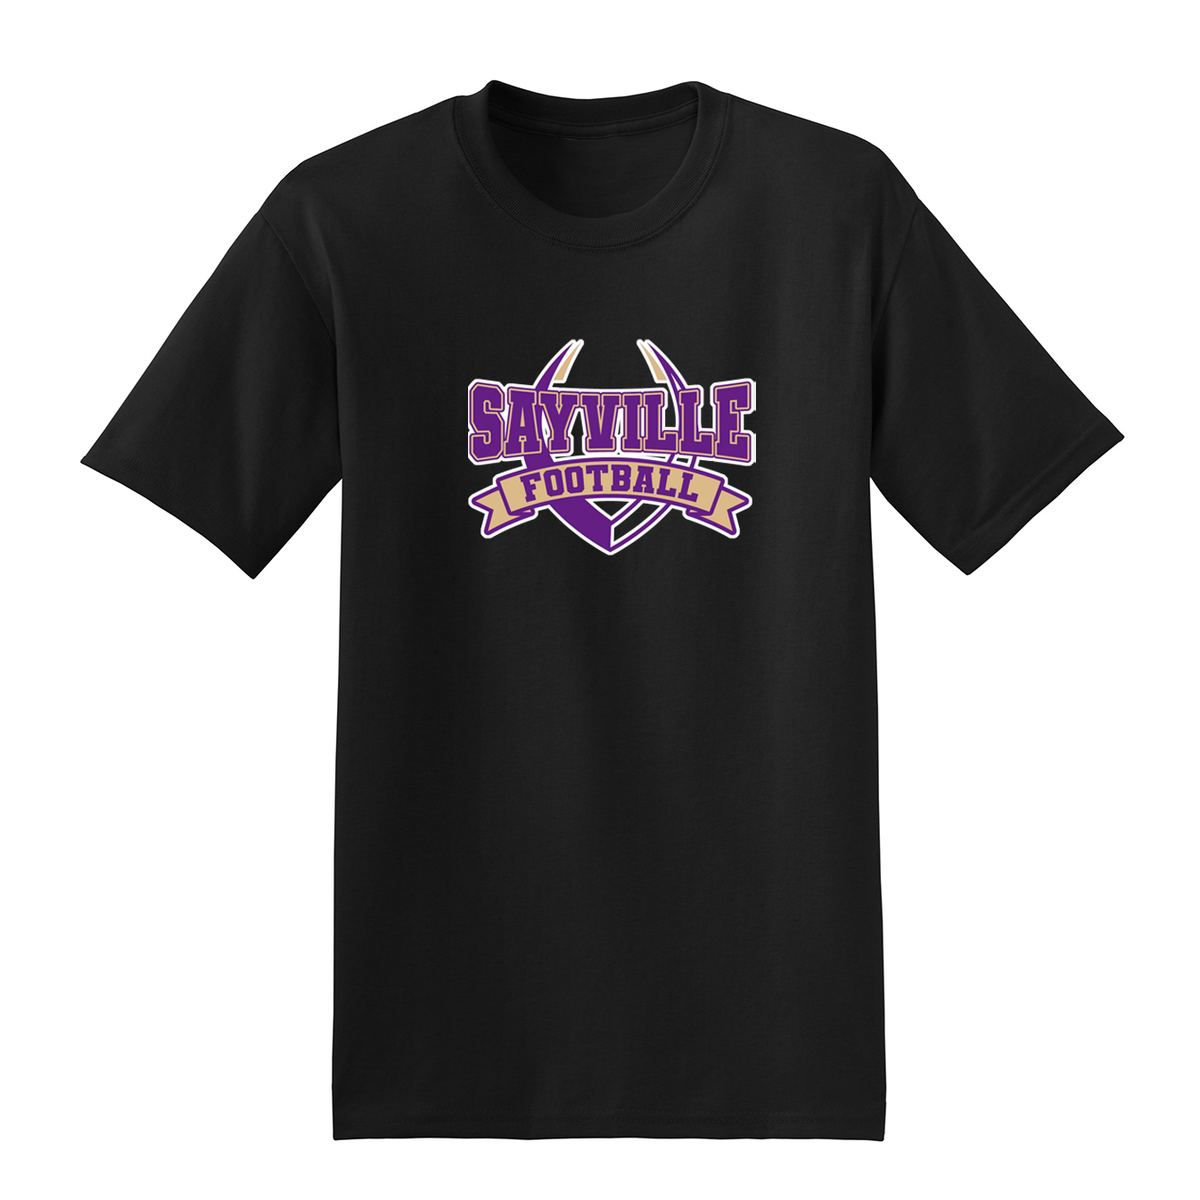 Sayville Football T-Shirt